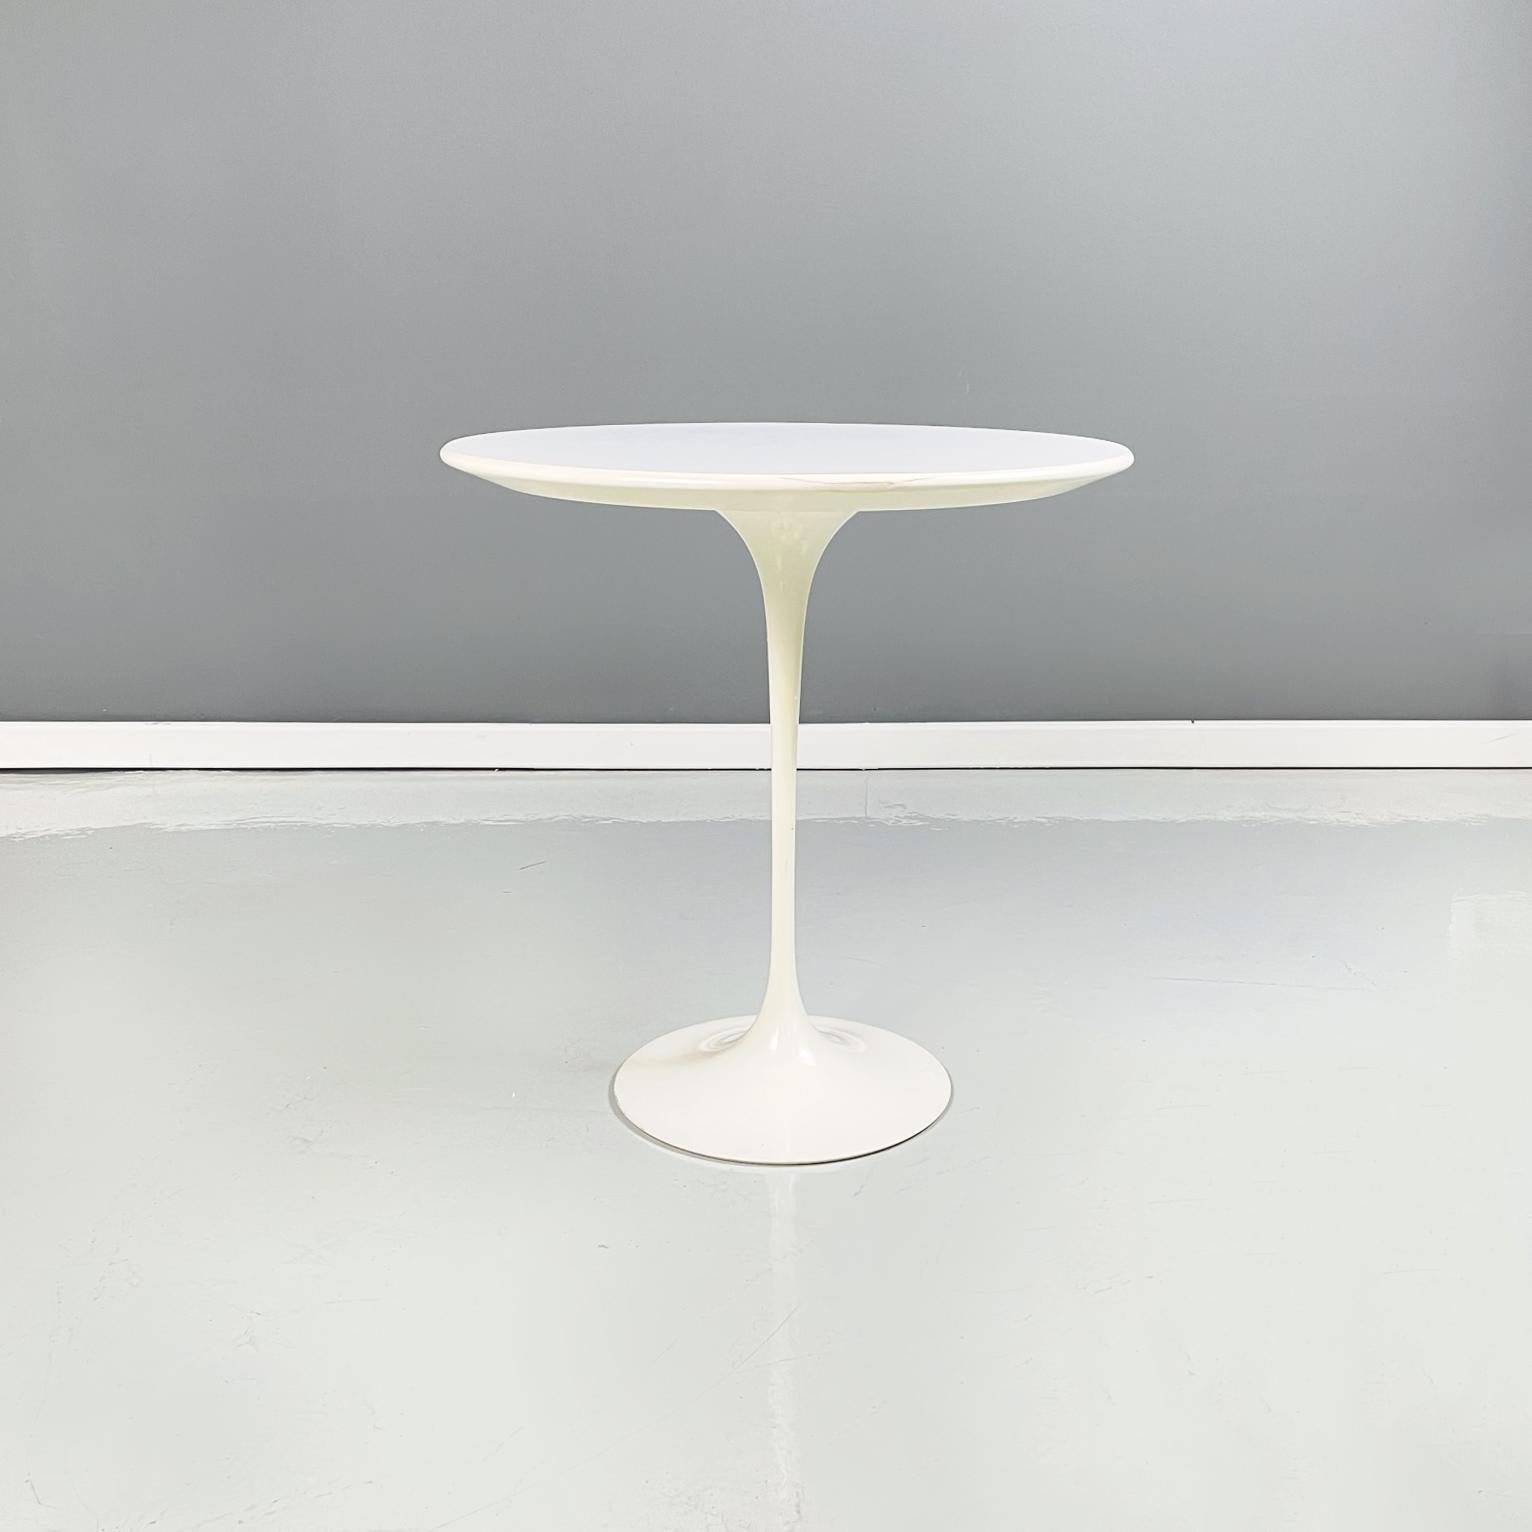 Table basse en bois stratifié blanc et métal de style américain Mid-Century Modern mod. Tulip de Knoll, 1960
Table basse mod. Tulip avec plateau rond en stratifié blanc. Base en métal peint en blanc. 
Produit par Knoll dans les années 1960 et conçu